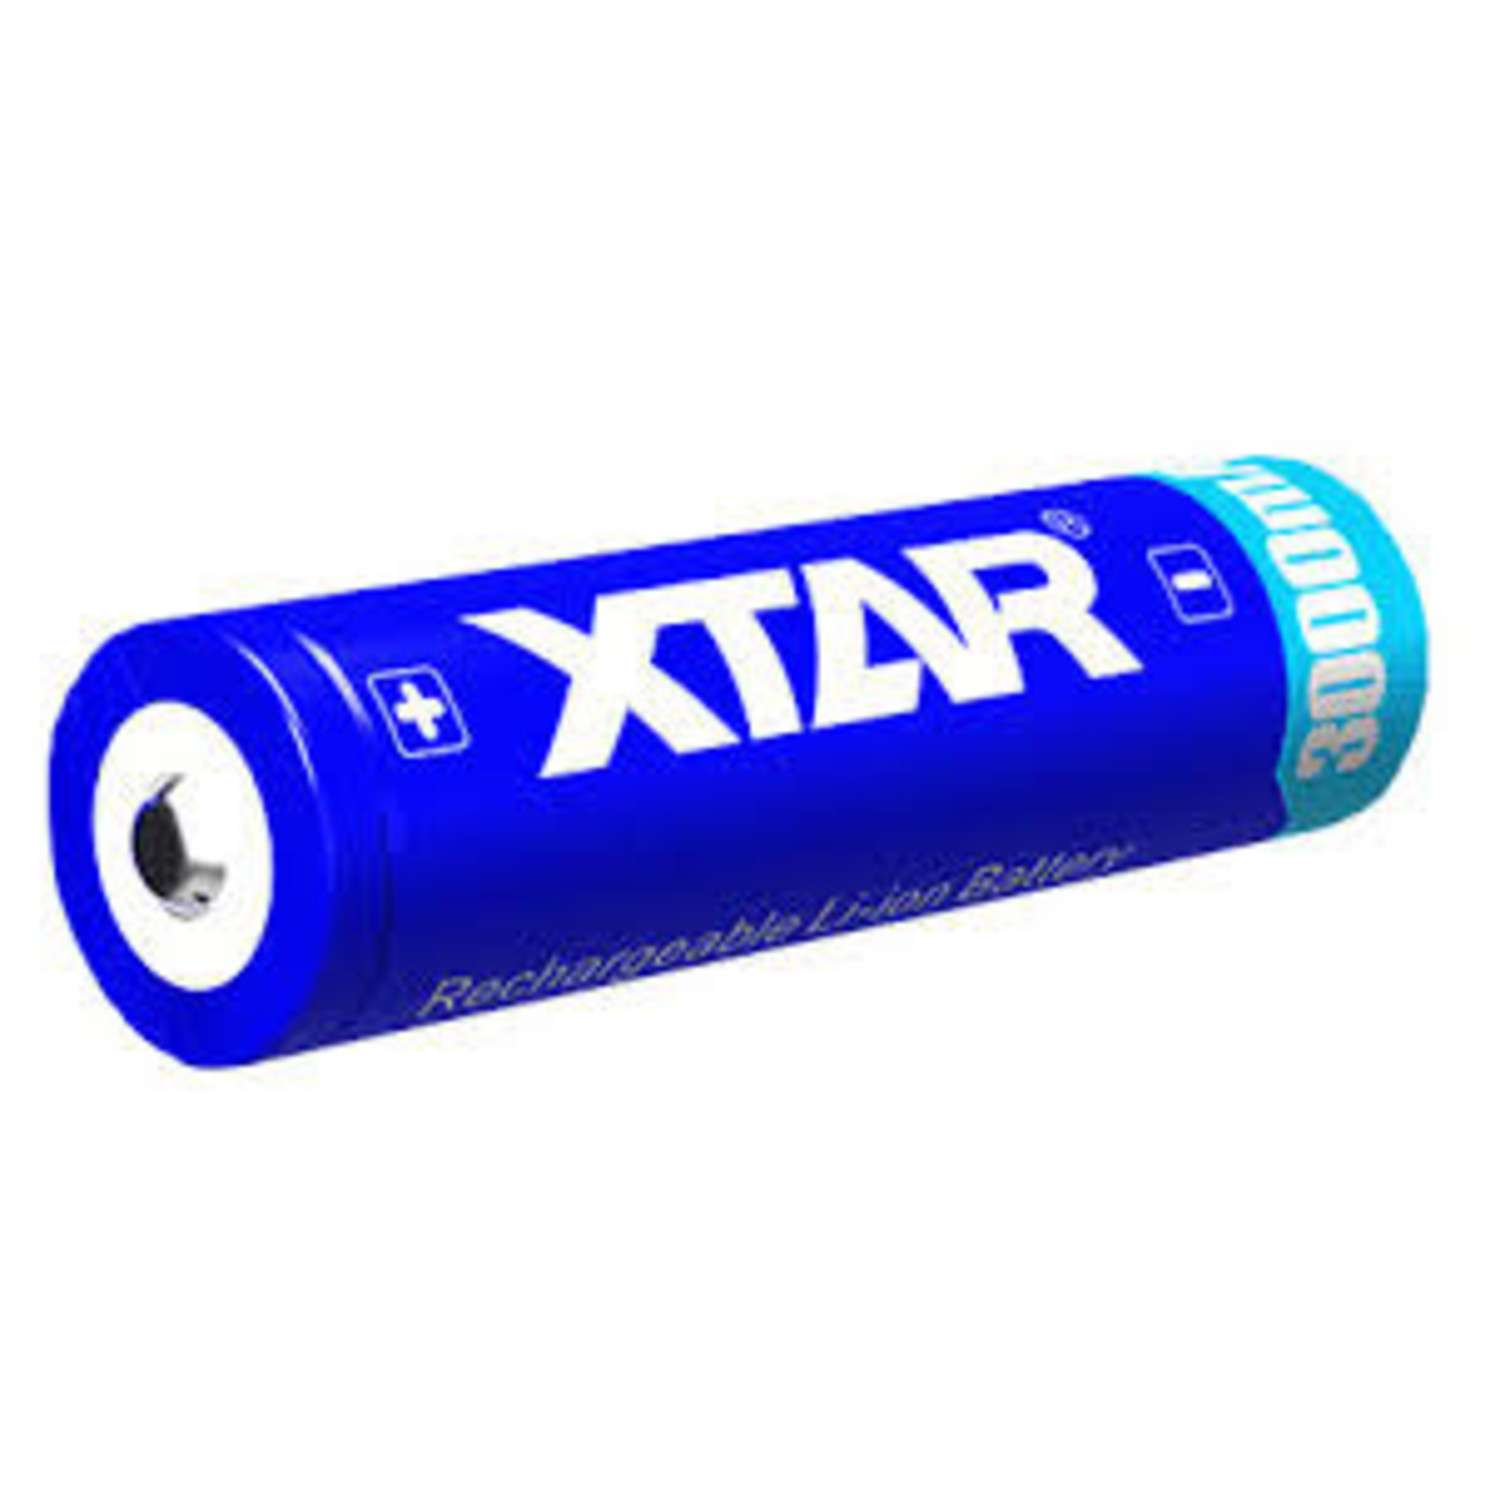 genoeg extase microscopisch Xtar 18650 oplaadbare Li-ion batterij 3,6V 3000 mAh. (lithium-ion) -  Batterijenstunter.nl